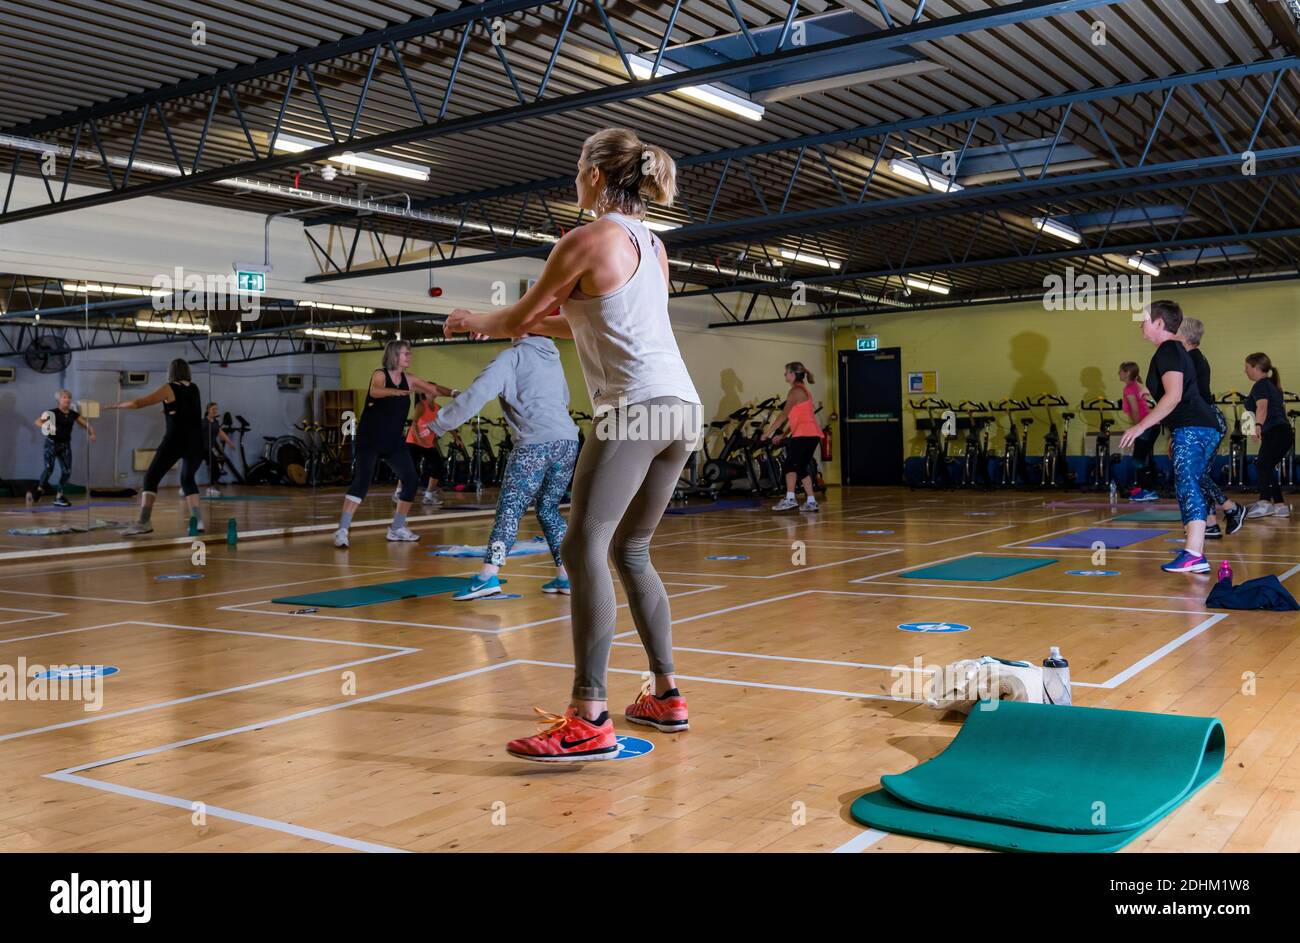 Les femmes qui s'exercent dans un cours d'entraînement en salle de gym avec des marques de distanciation sociale à l'étage, North Berwick Profitez du centre sportif de loisirs, Écosse, Royaume-Uni Banque D'Images